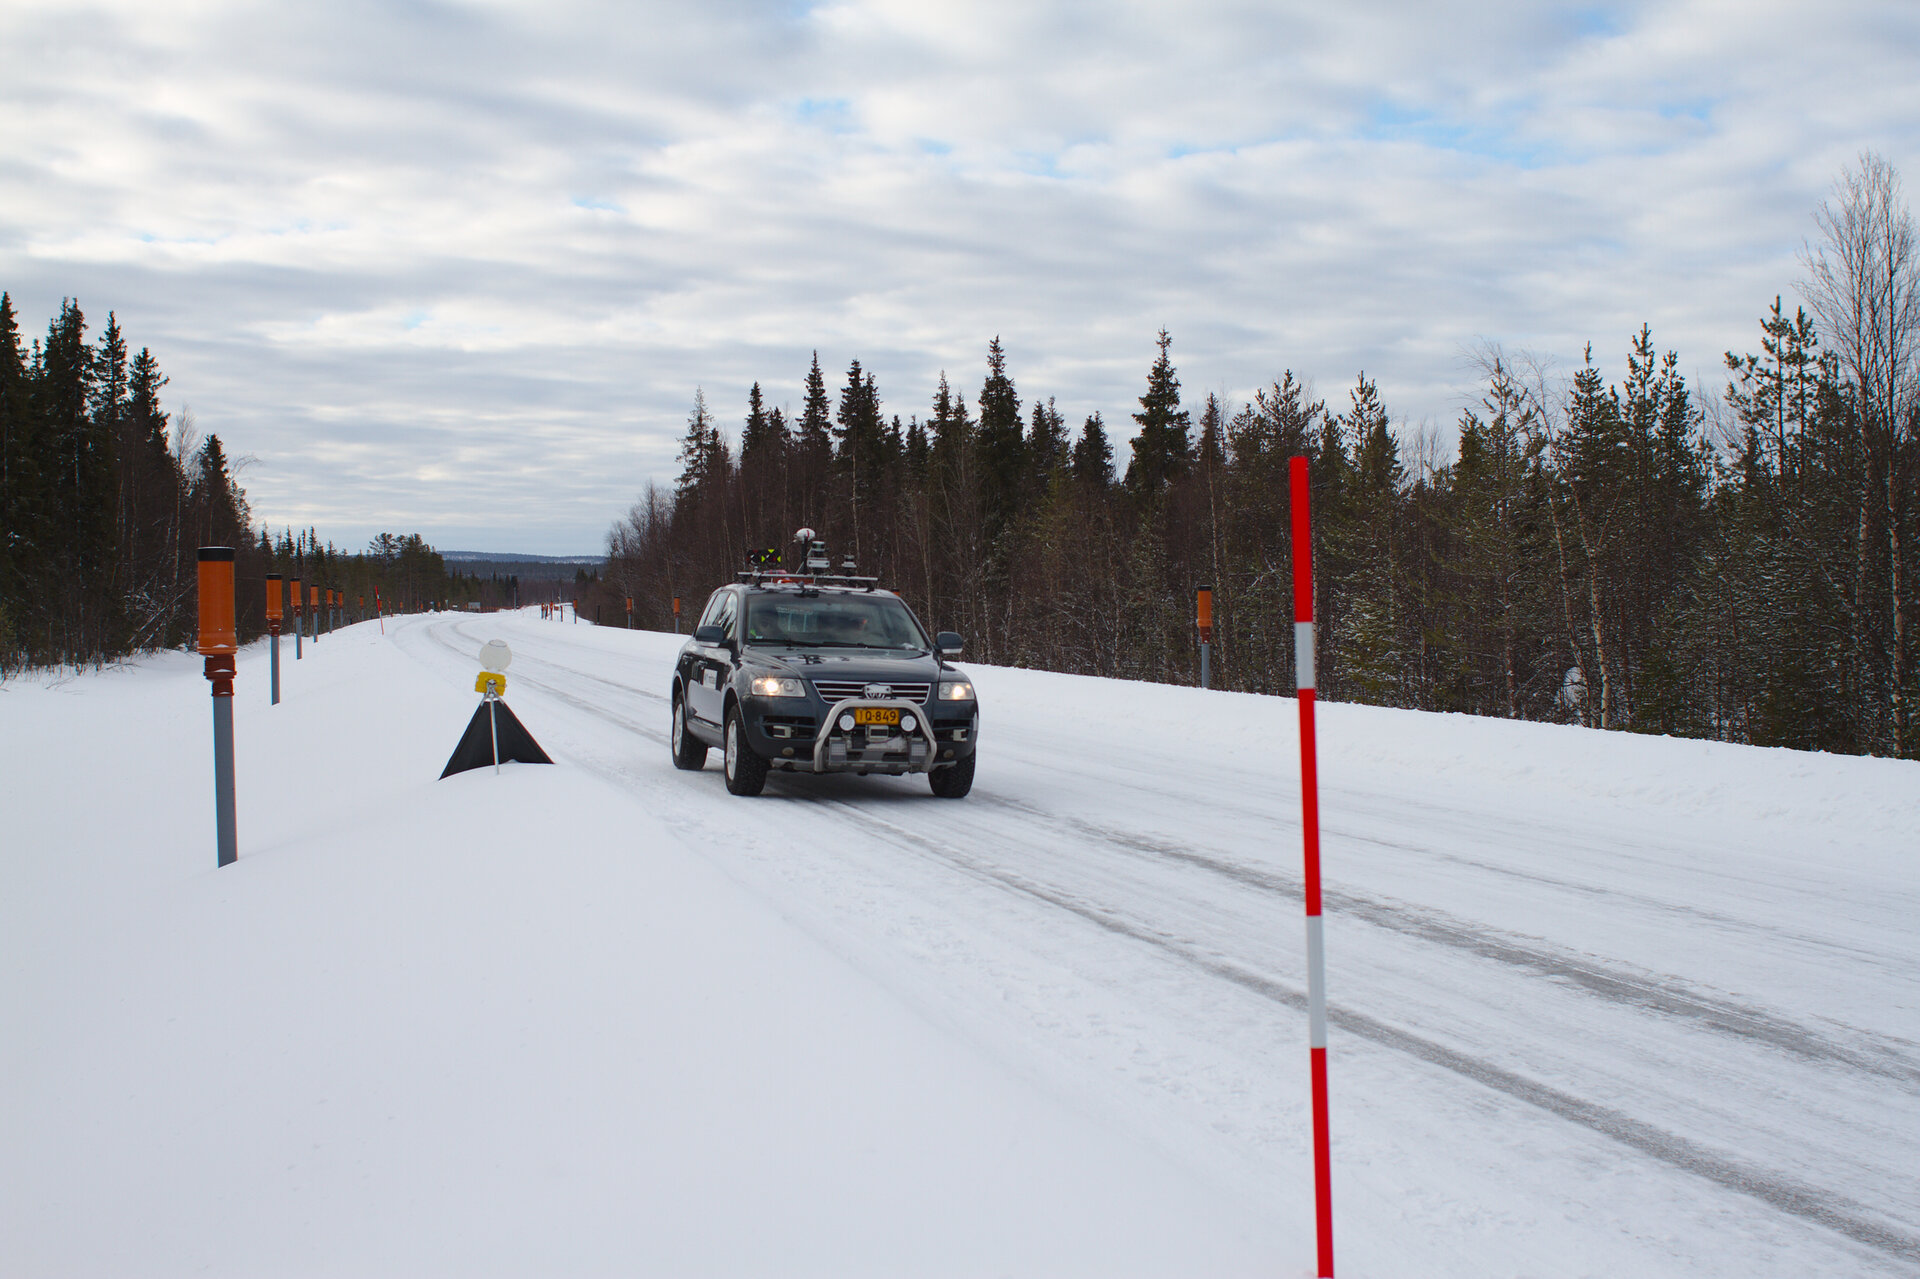 Snowbox test roadway